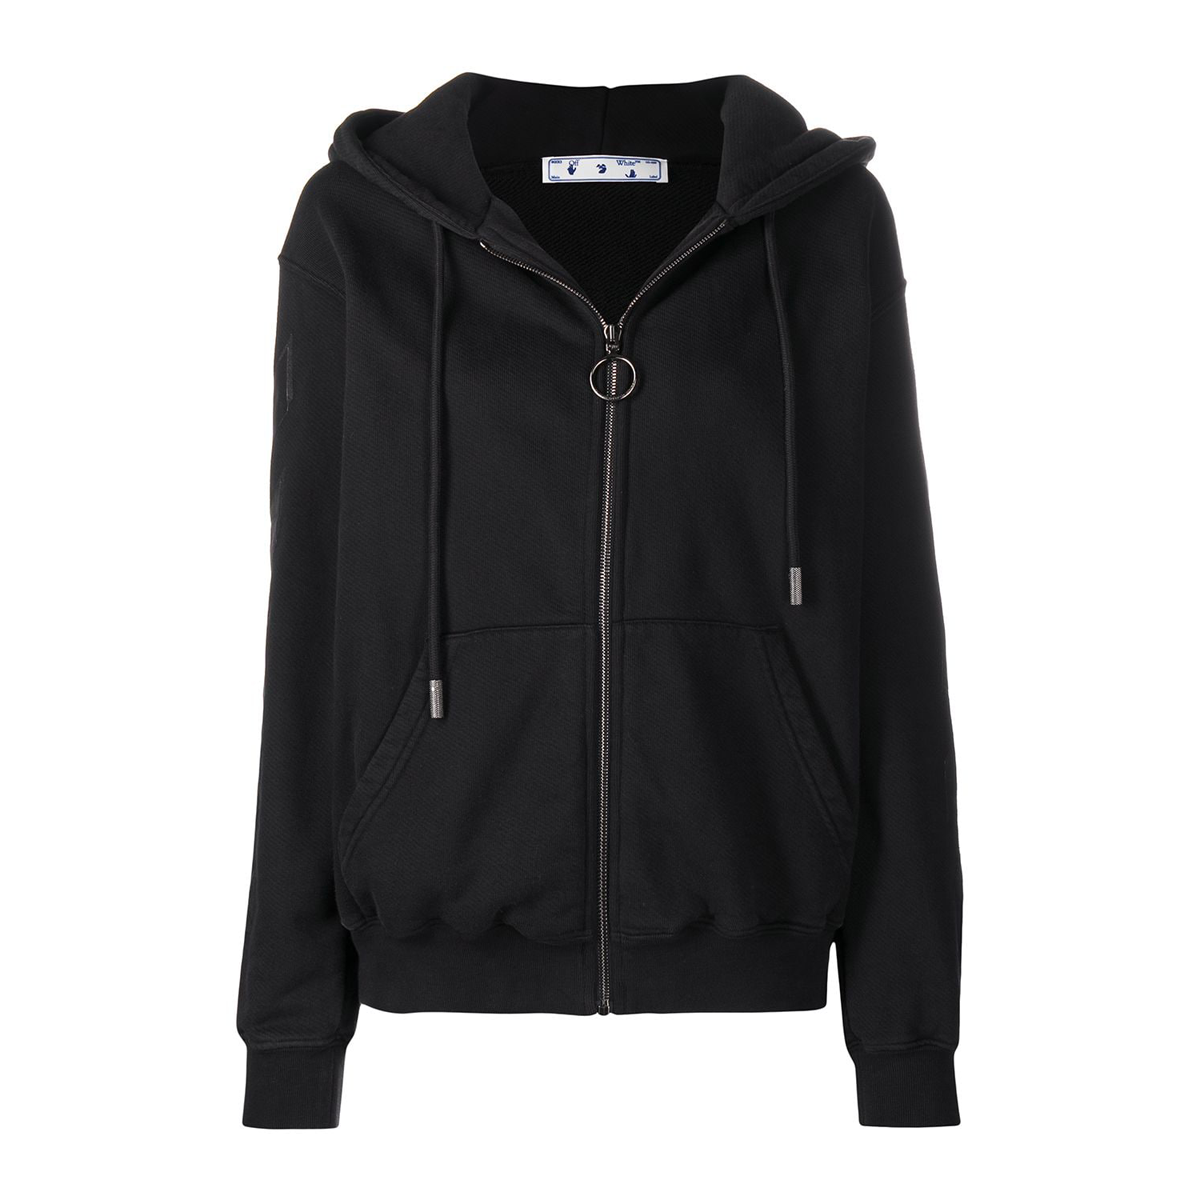 Arrow zipped hoodie black black